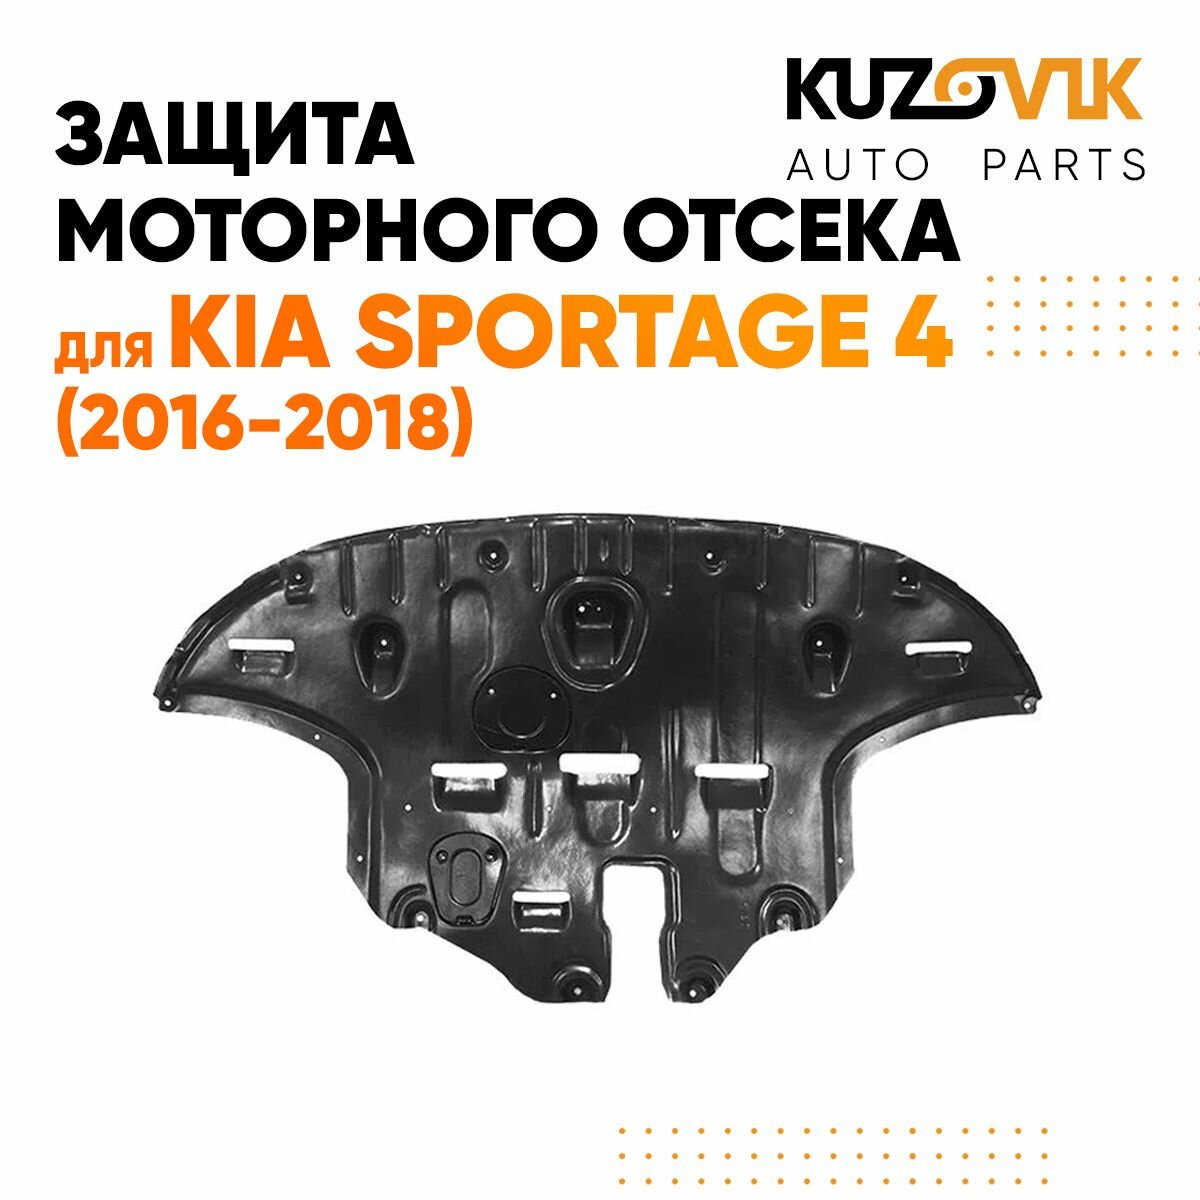 Защита пыльник двигателя Киа Спортейдж Kia Sportage 4 (2016-2018) пластиковая